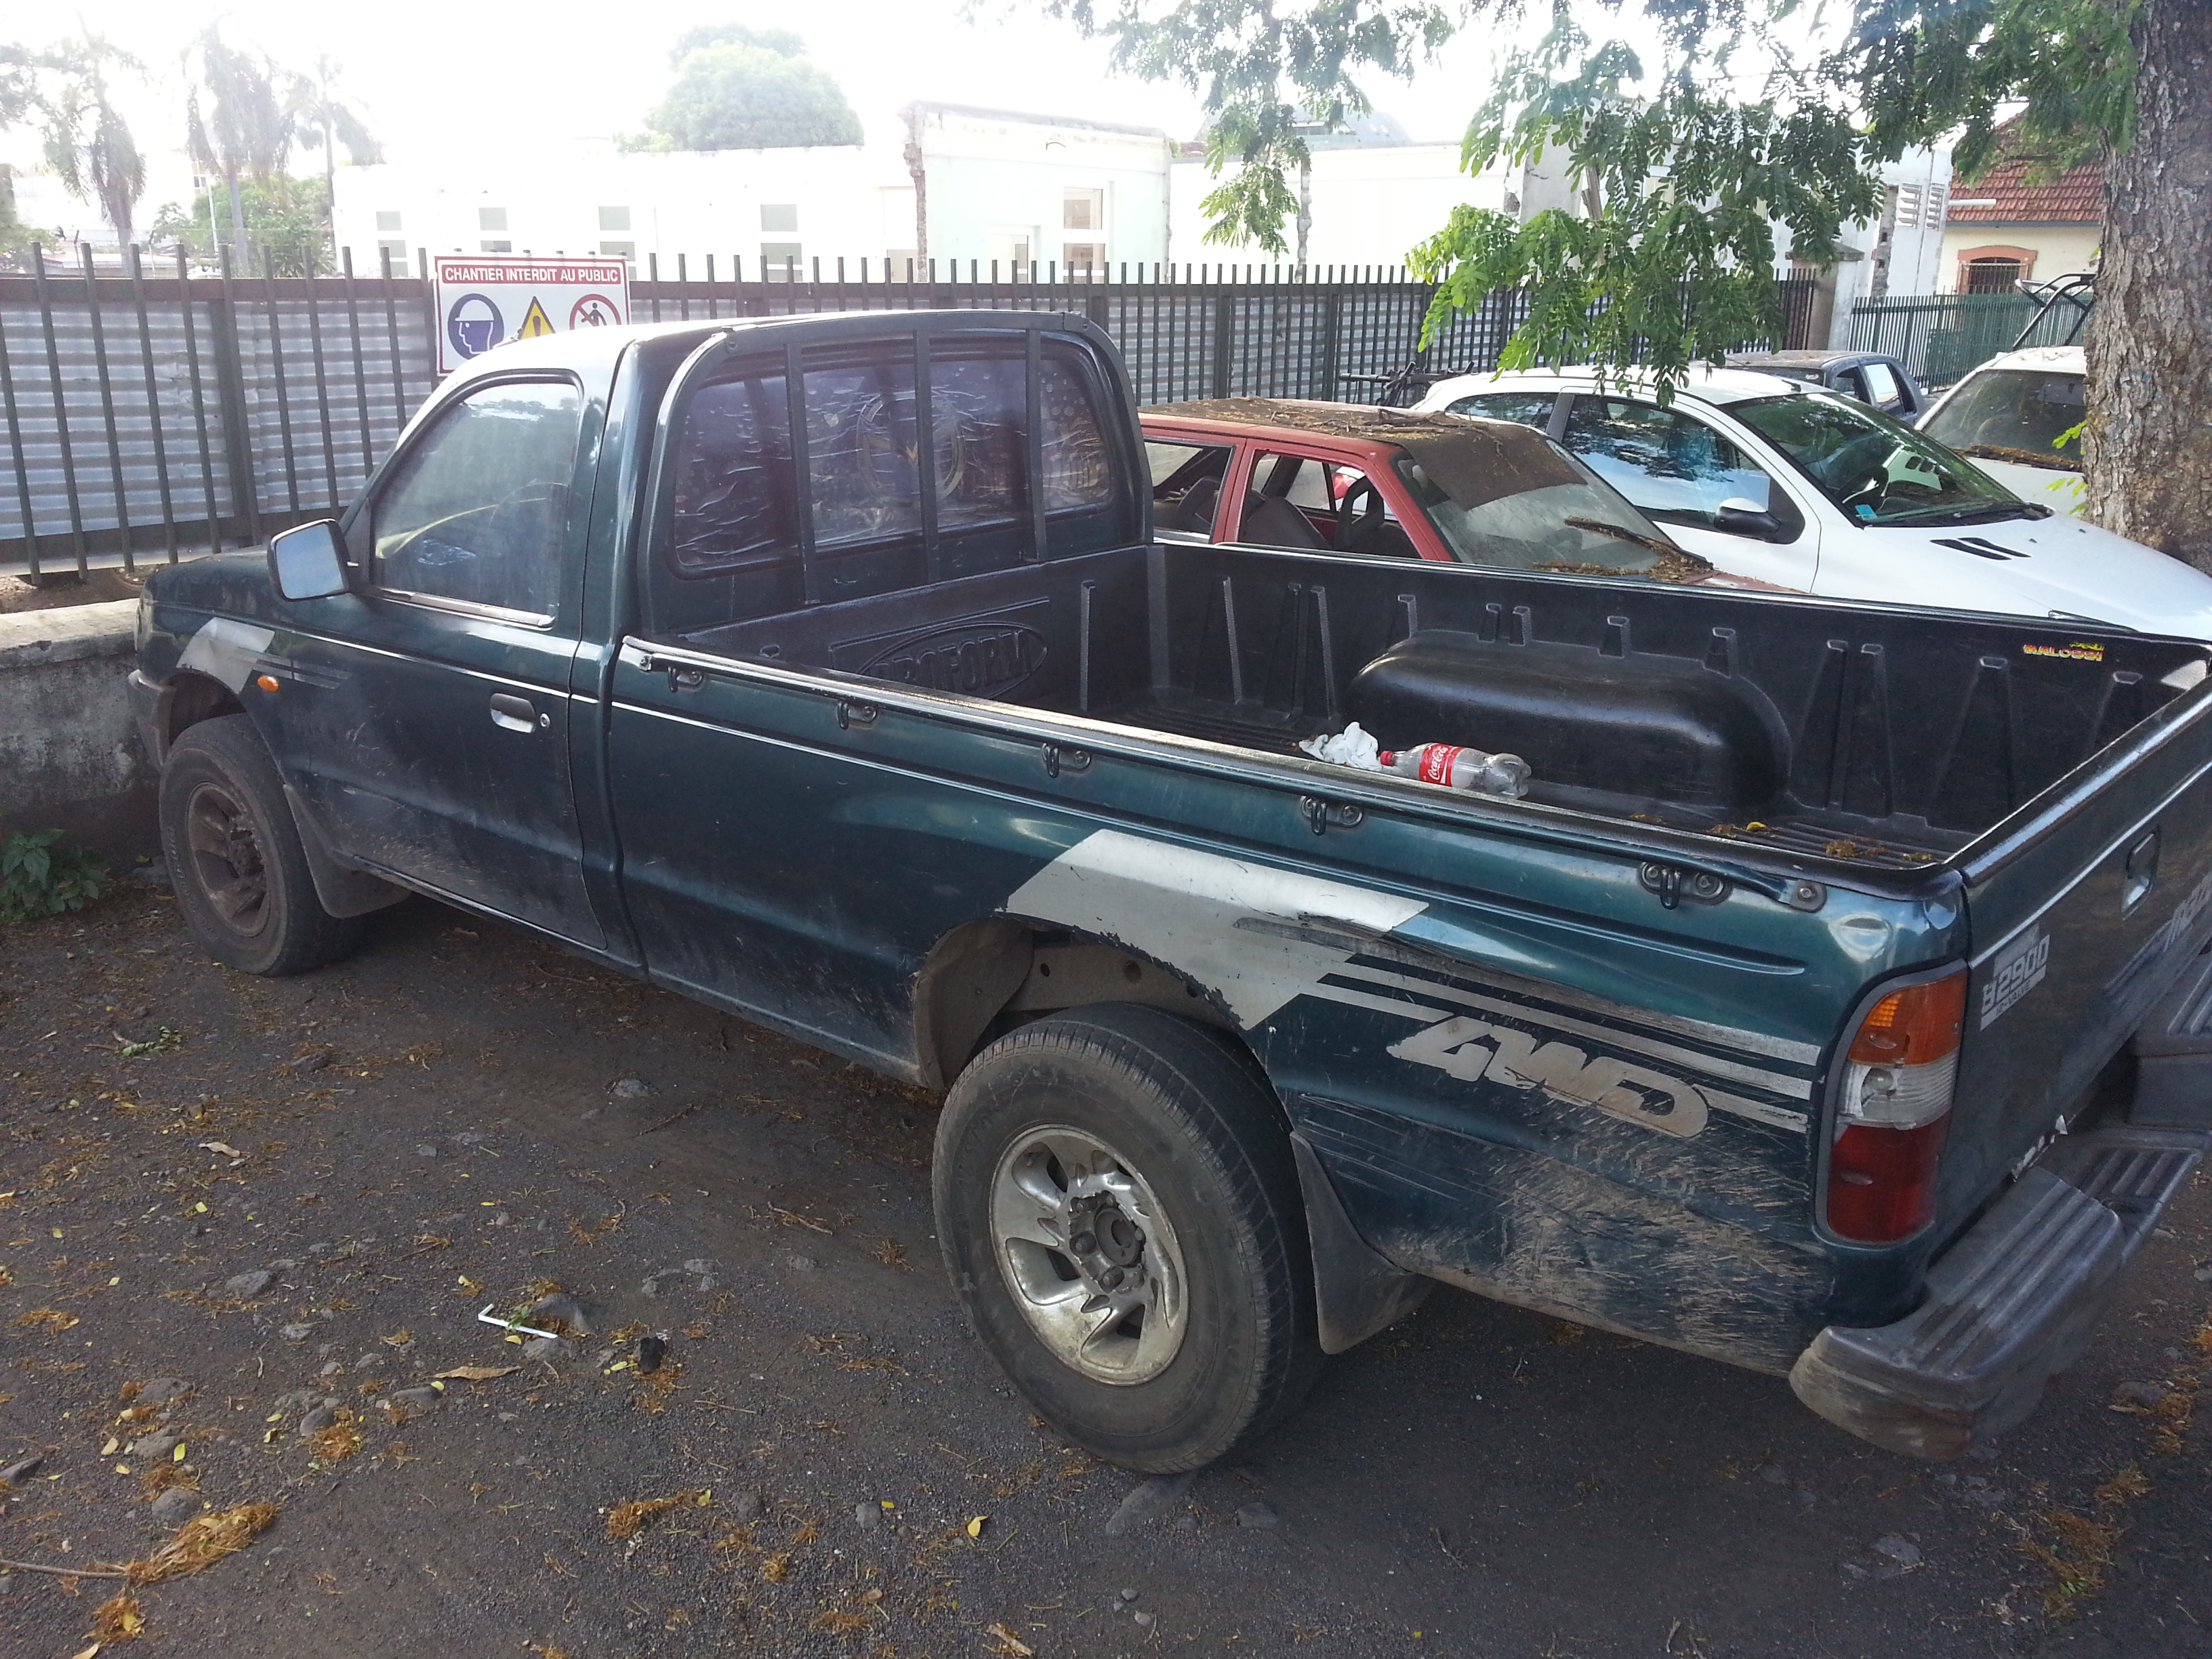 Le pick-up utilisé par les cambrioleurs avait été saisi par les policiers de la DSP.